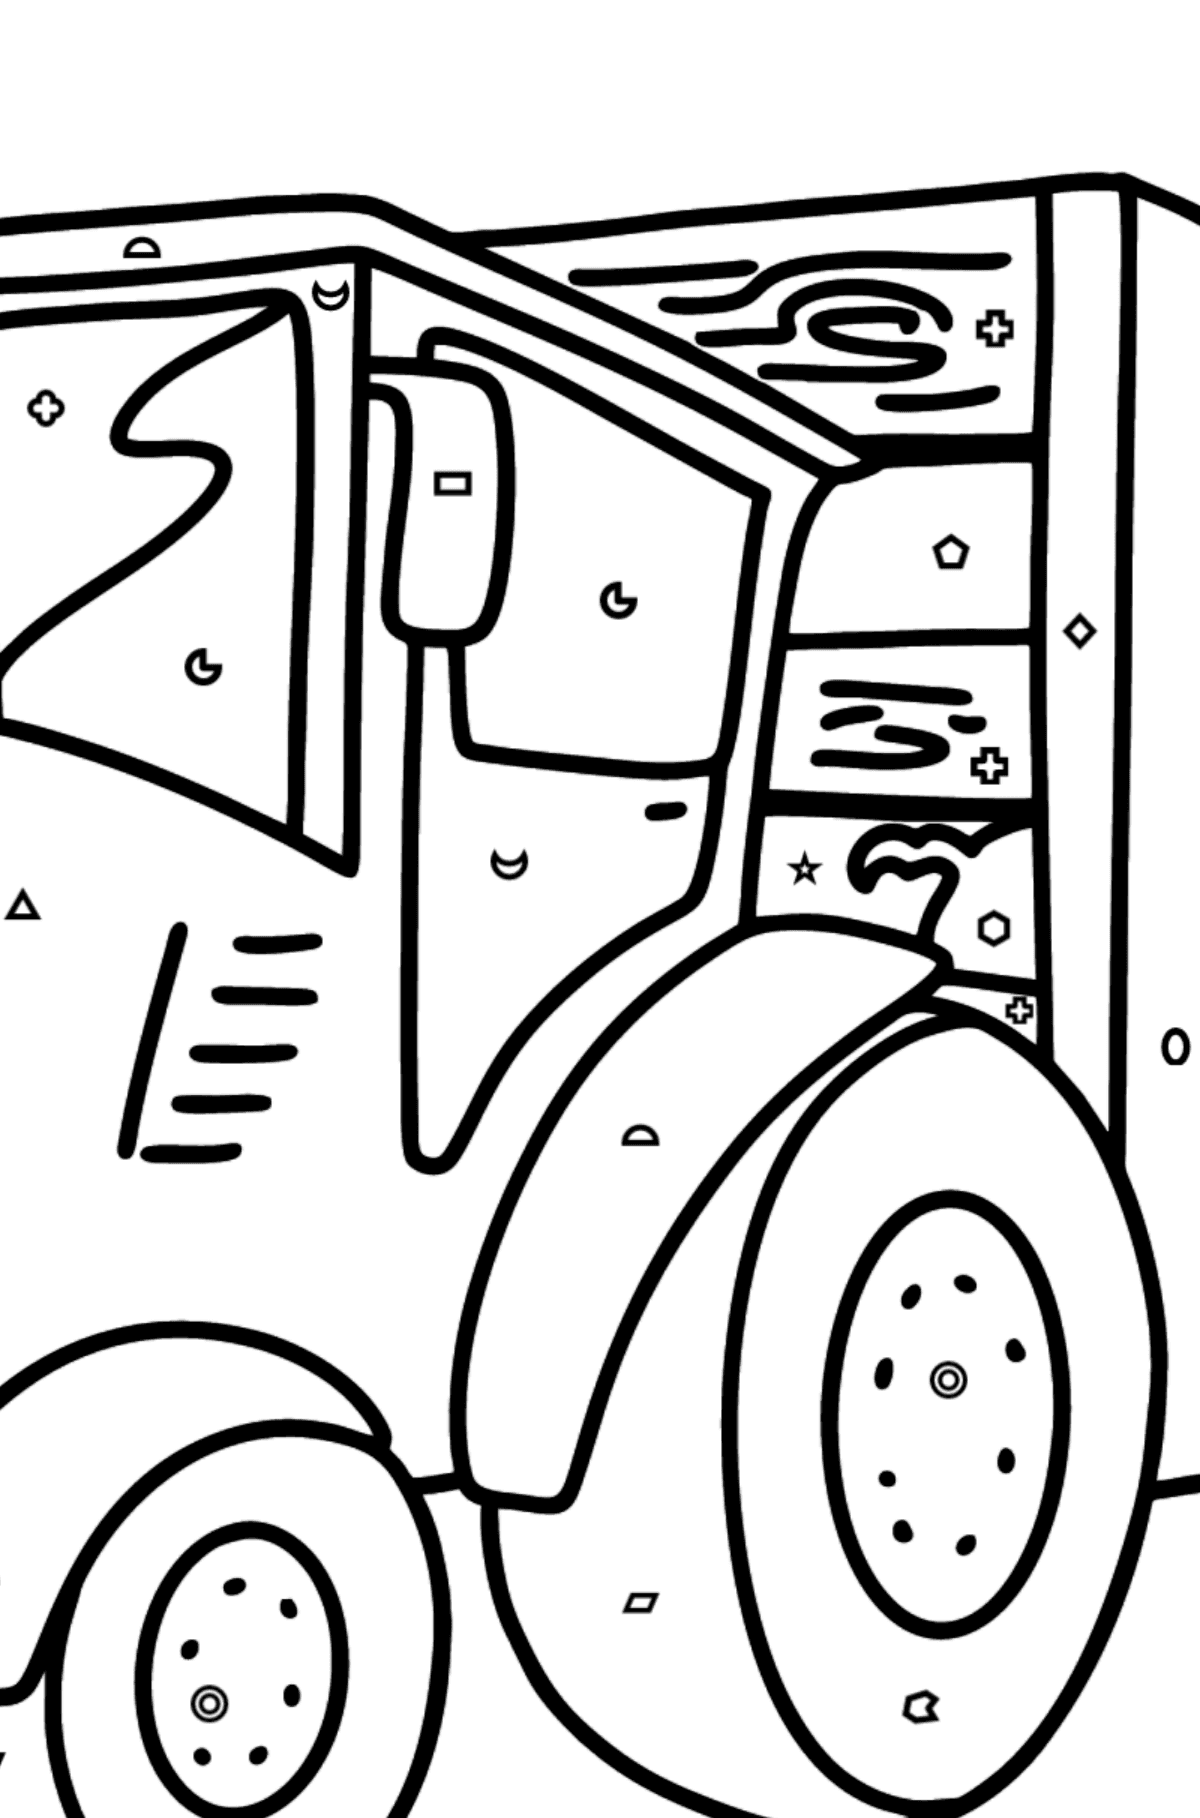 Desenho para colorir Tractor with Pig Trailer - Colorir por Formas Geométricas para Crianças